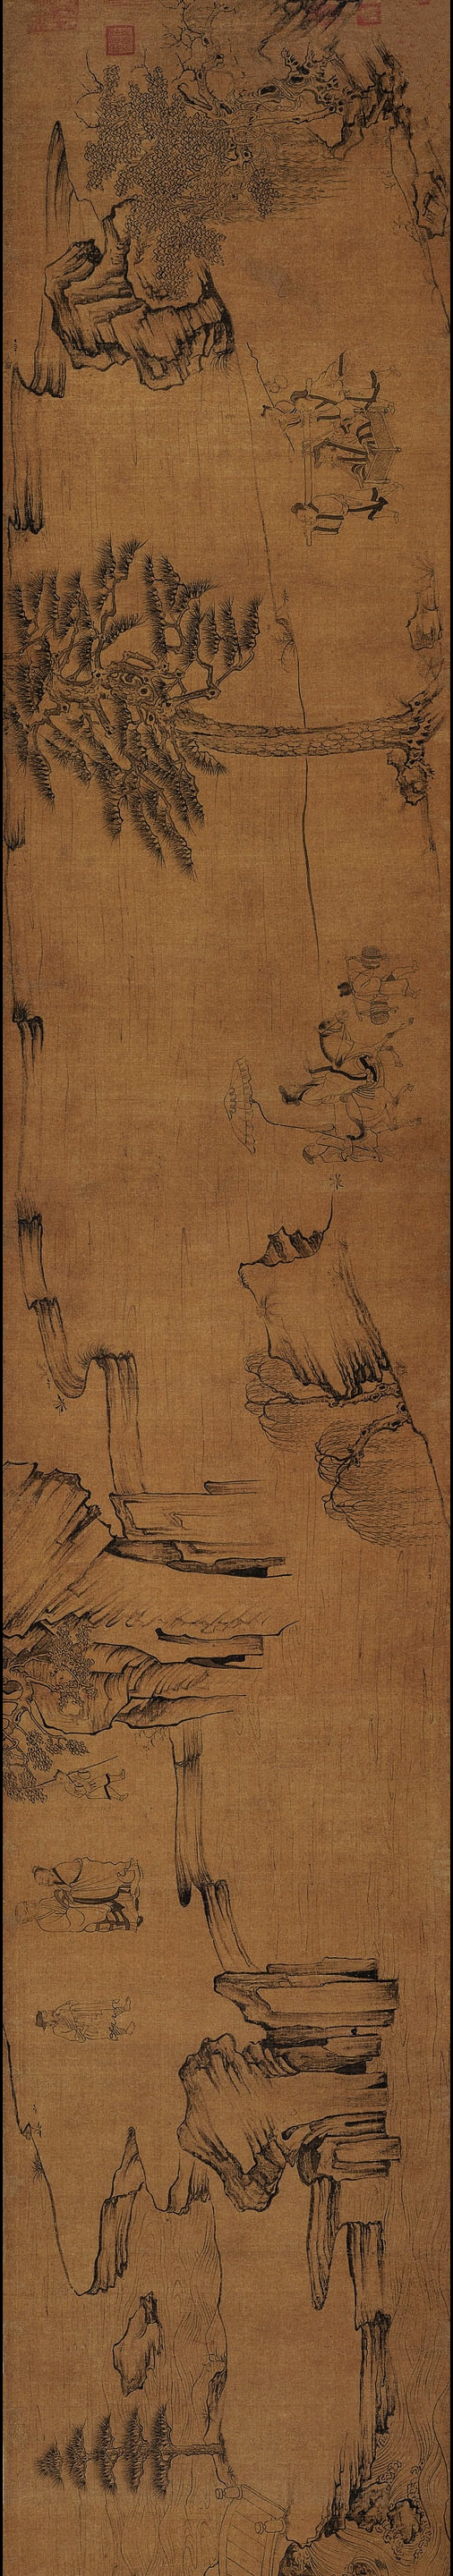 【图2】《莲社图》，绢本水墨，纵60.1厘米，横459.8厘米，上海博物馆藏（局部）